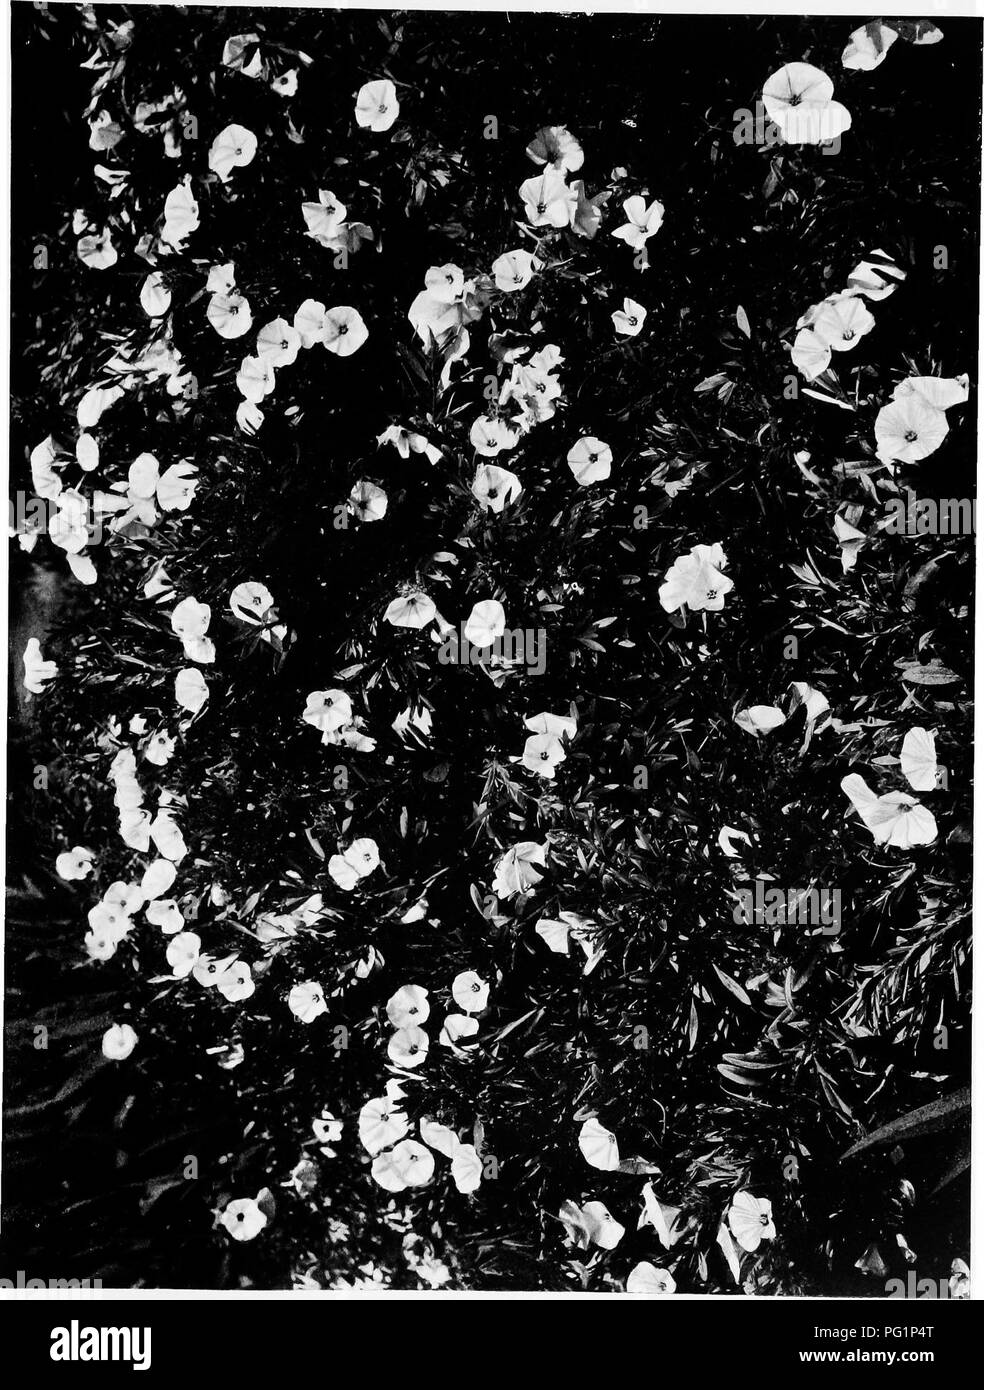 . Il mio arbusti . Gli arbusti; arbusti ornamentali. o w •una o en D Z O O. si prega di notare che queste immagini vengono estratte dalla pagina sottoposta a scansione di immagini che possono essere state migliorate digitalmente per la leggibilità - Colorazione e aspetto di queste illustrazioni potrebbero non perfettamente assomigliano al lavoro originale. Phillpotts, Eden, 1862-1960. London ; New York : John Lane Foto Stock